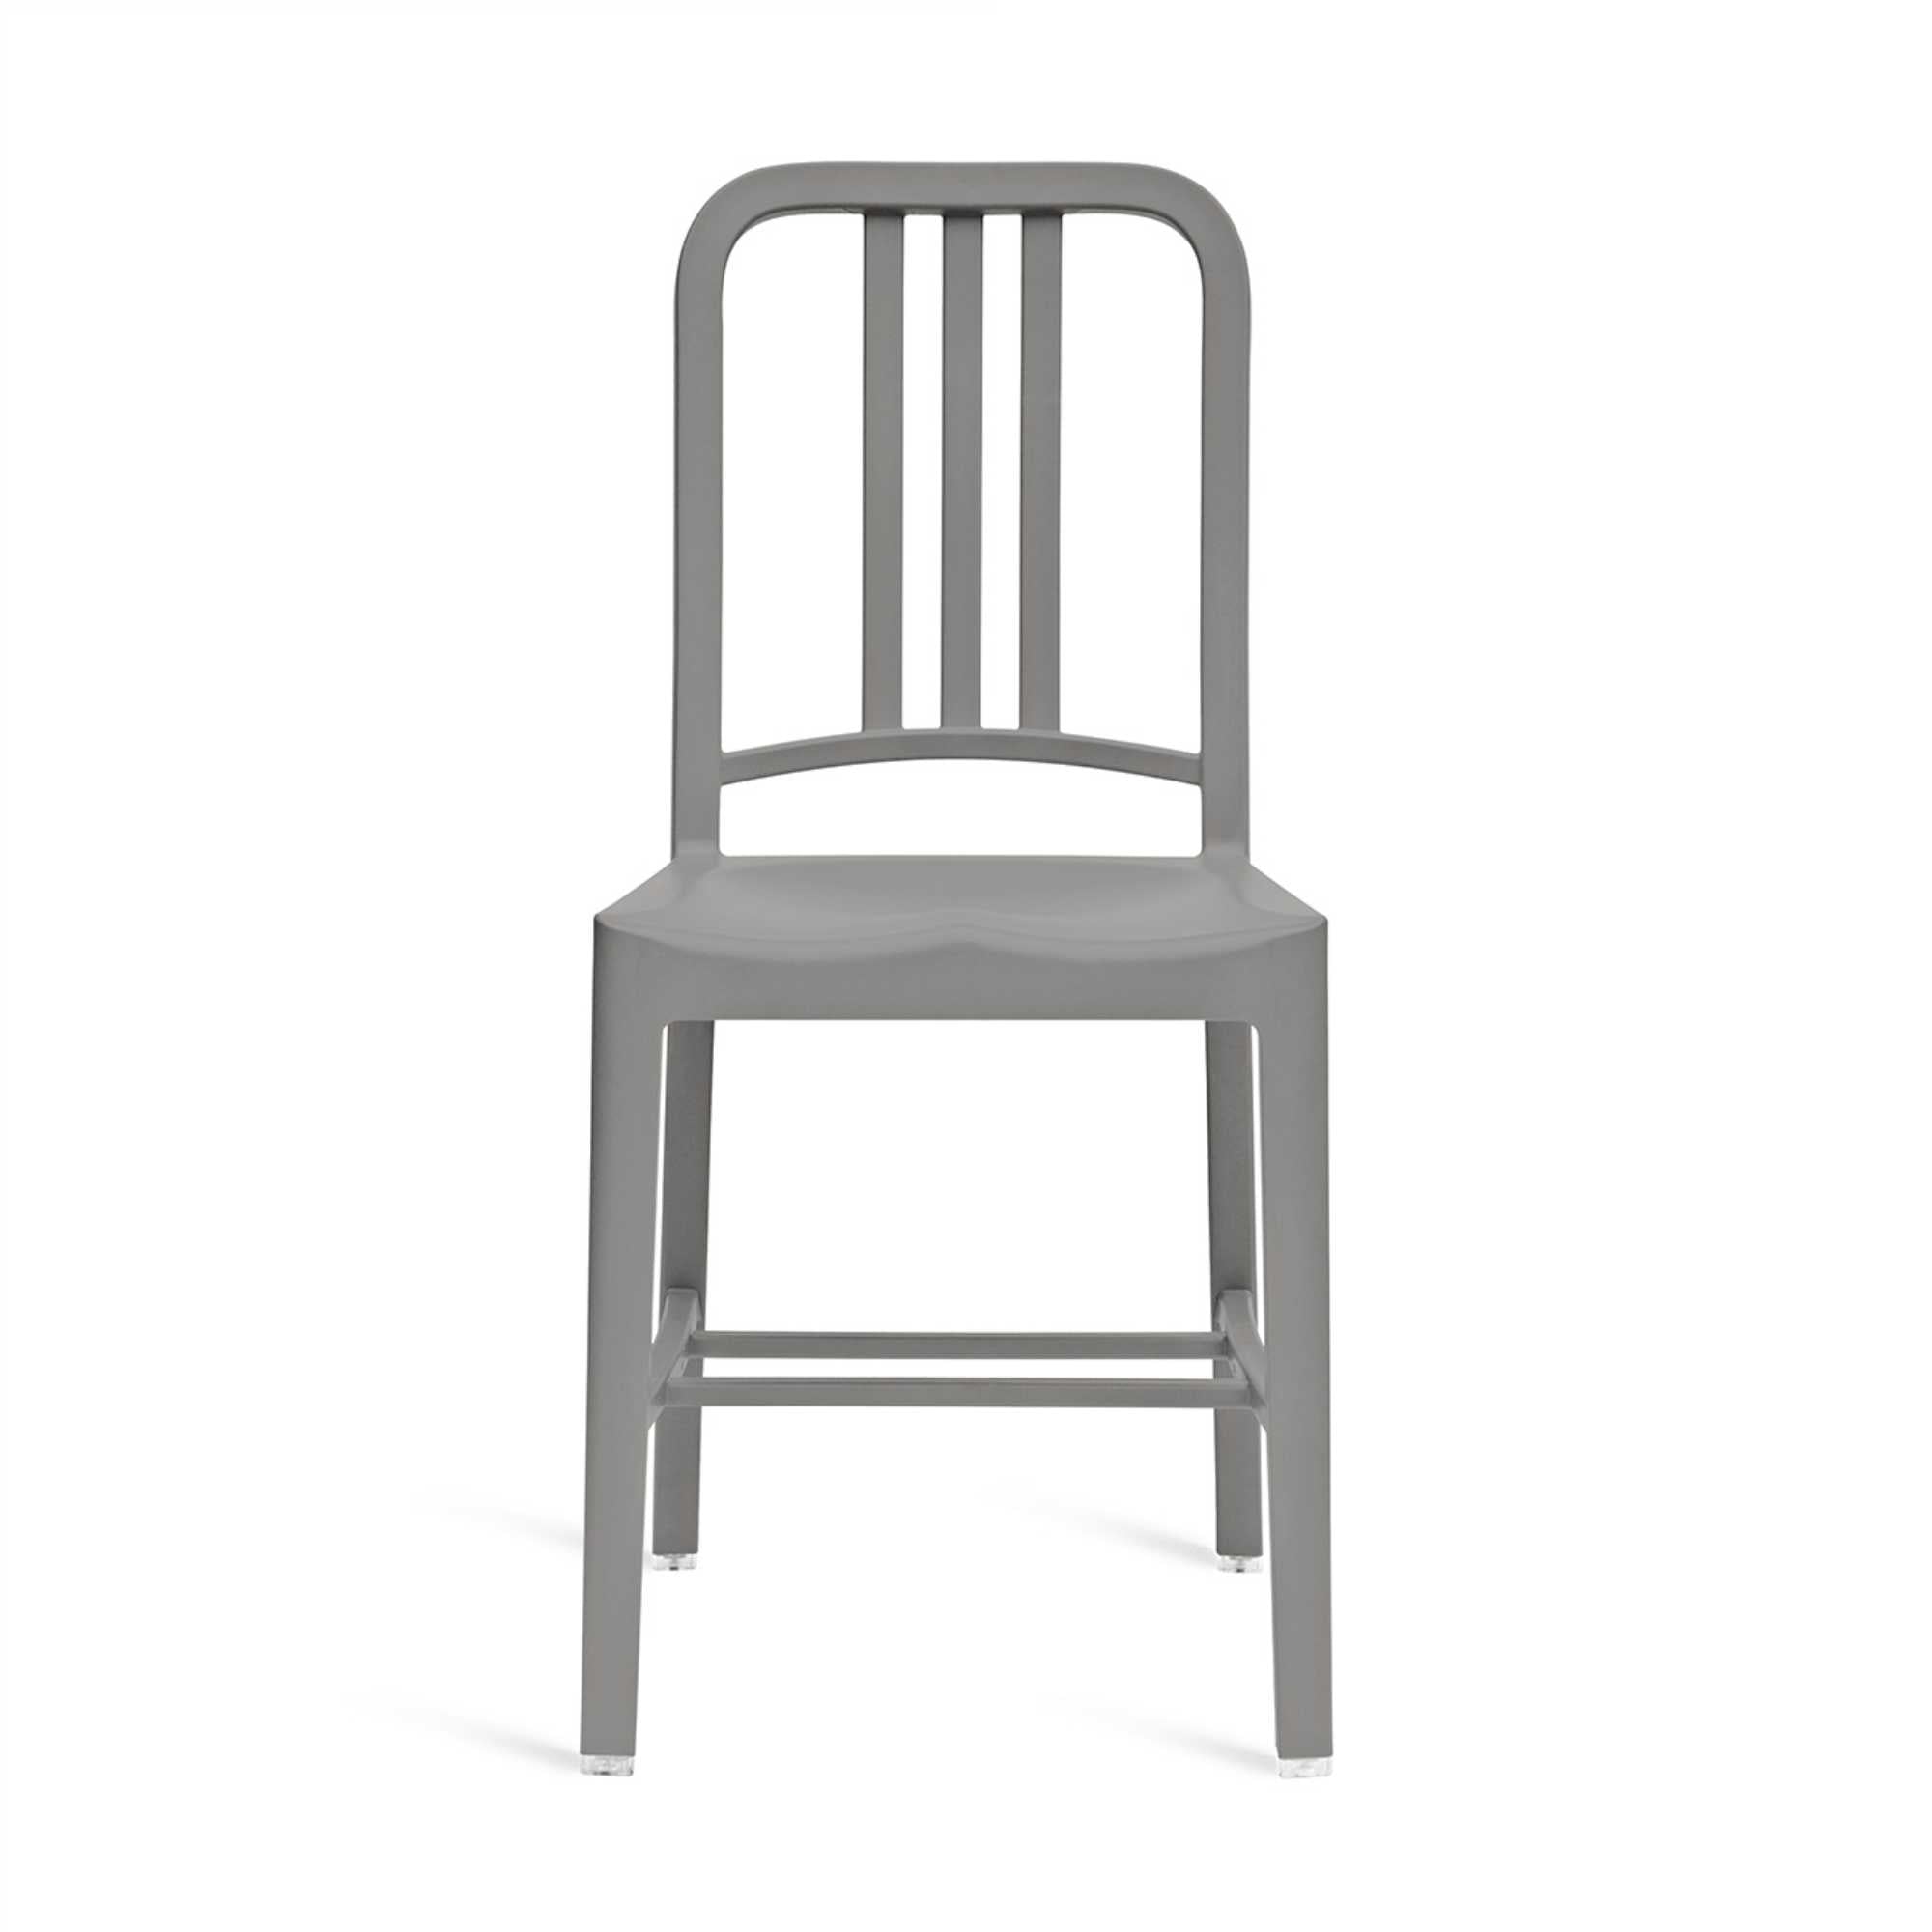 Emeco 111 NAVY® chair, flint